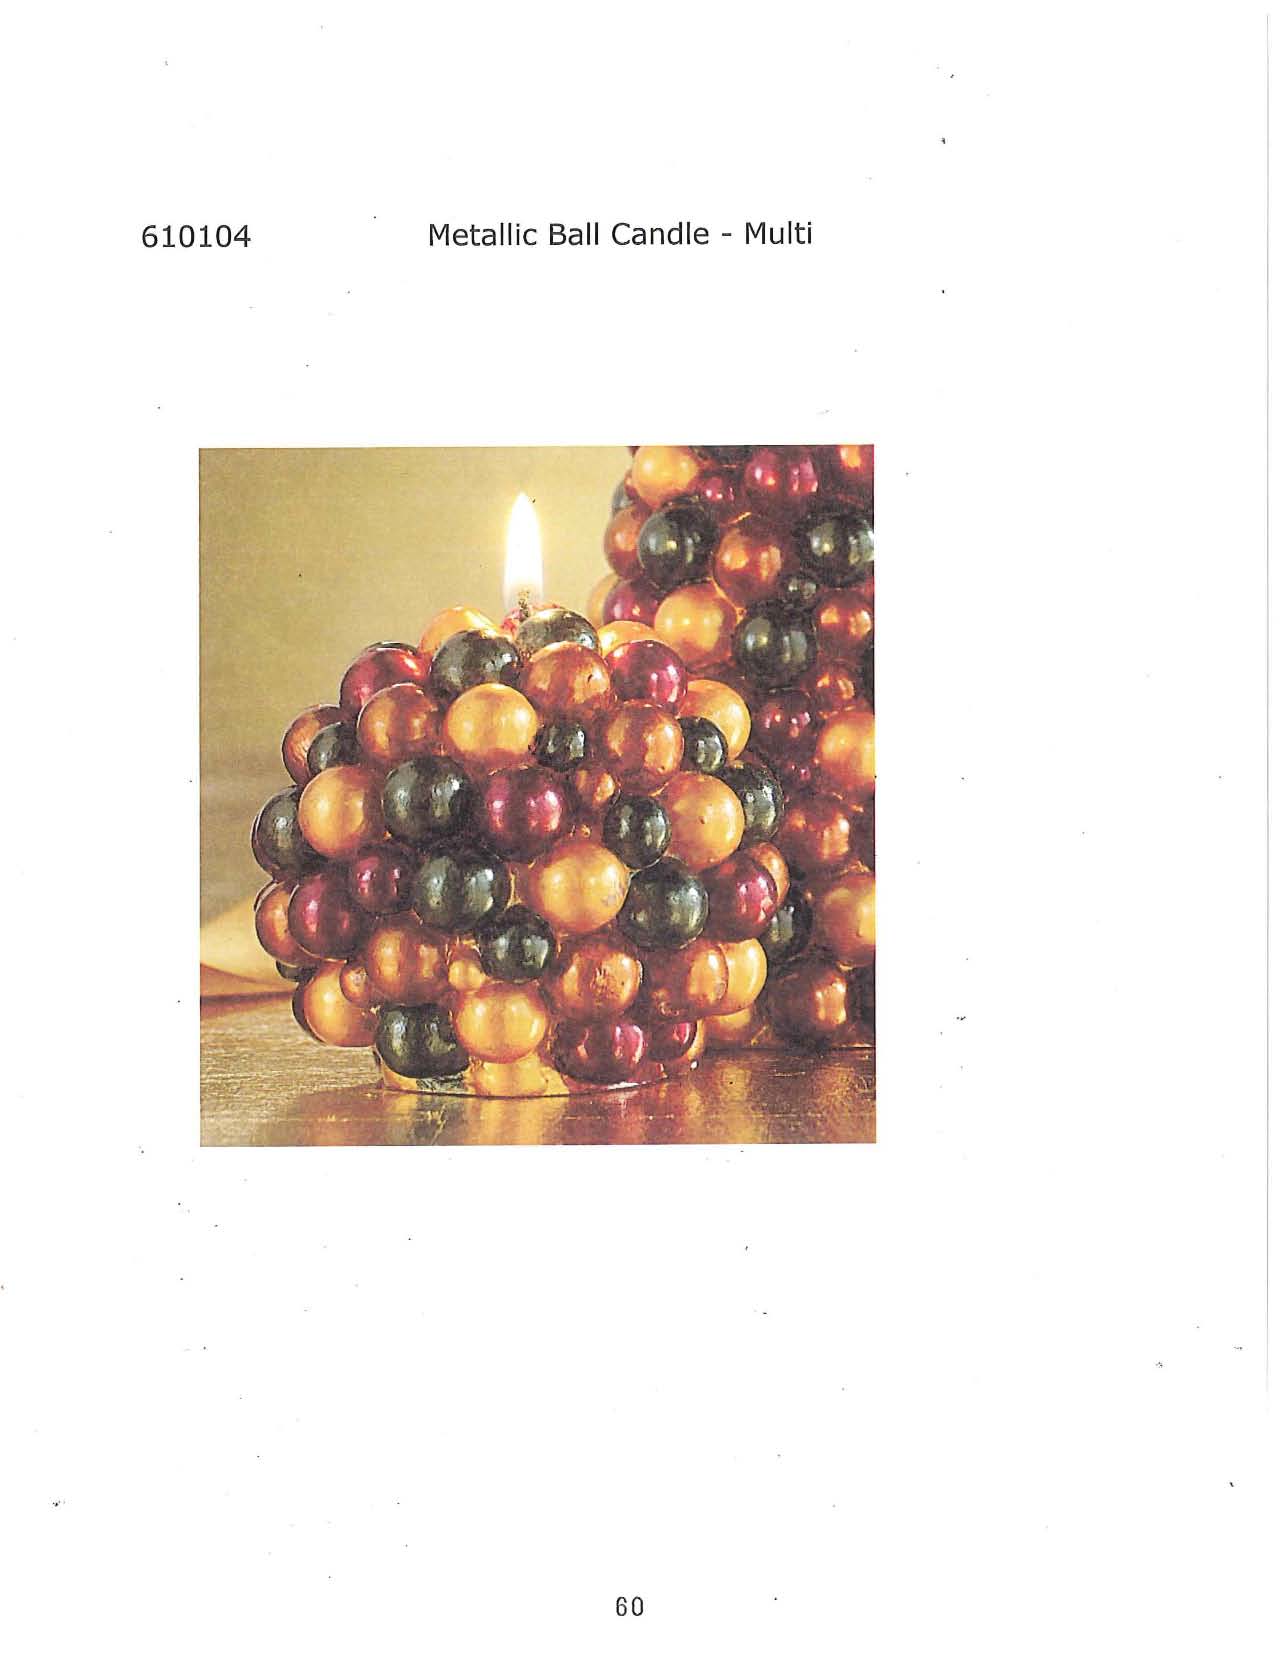 Metallic Ball Candle - Multi